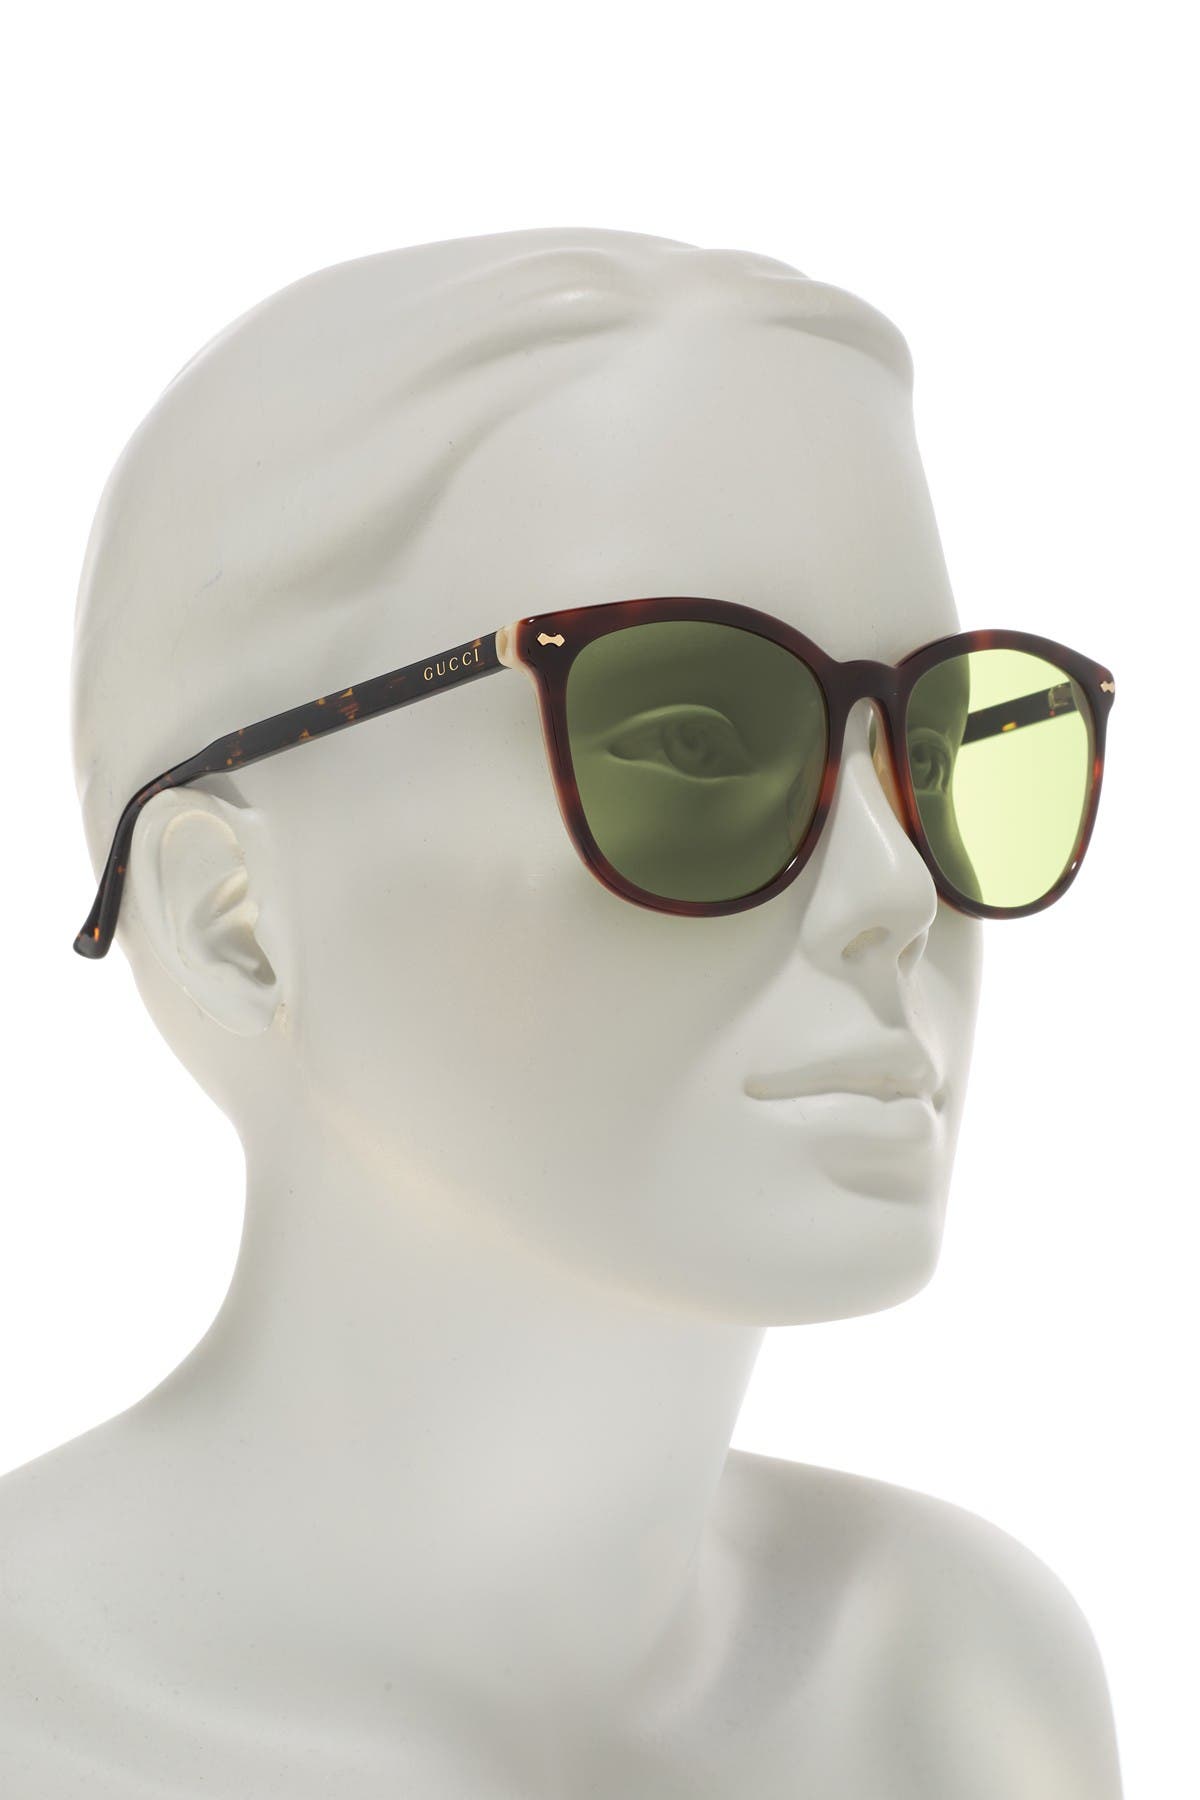 gucci 59mm square sunglasses